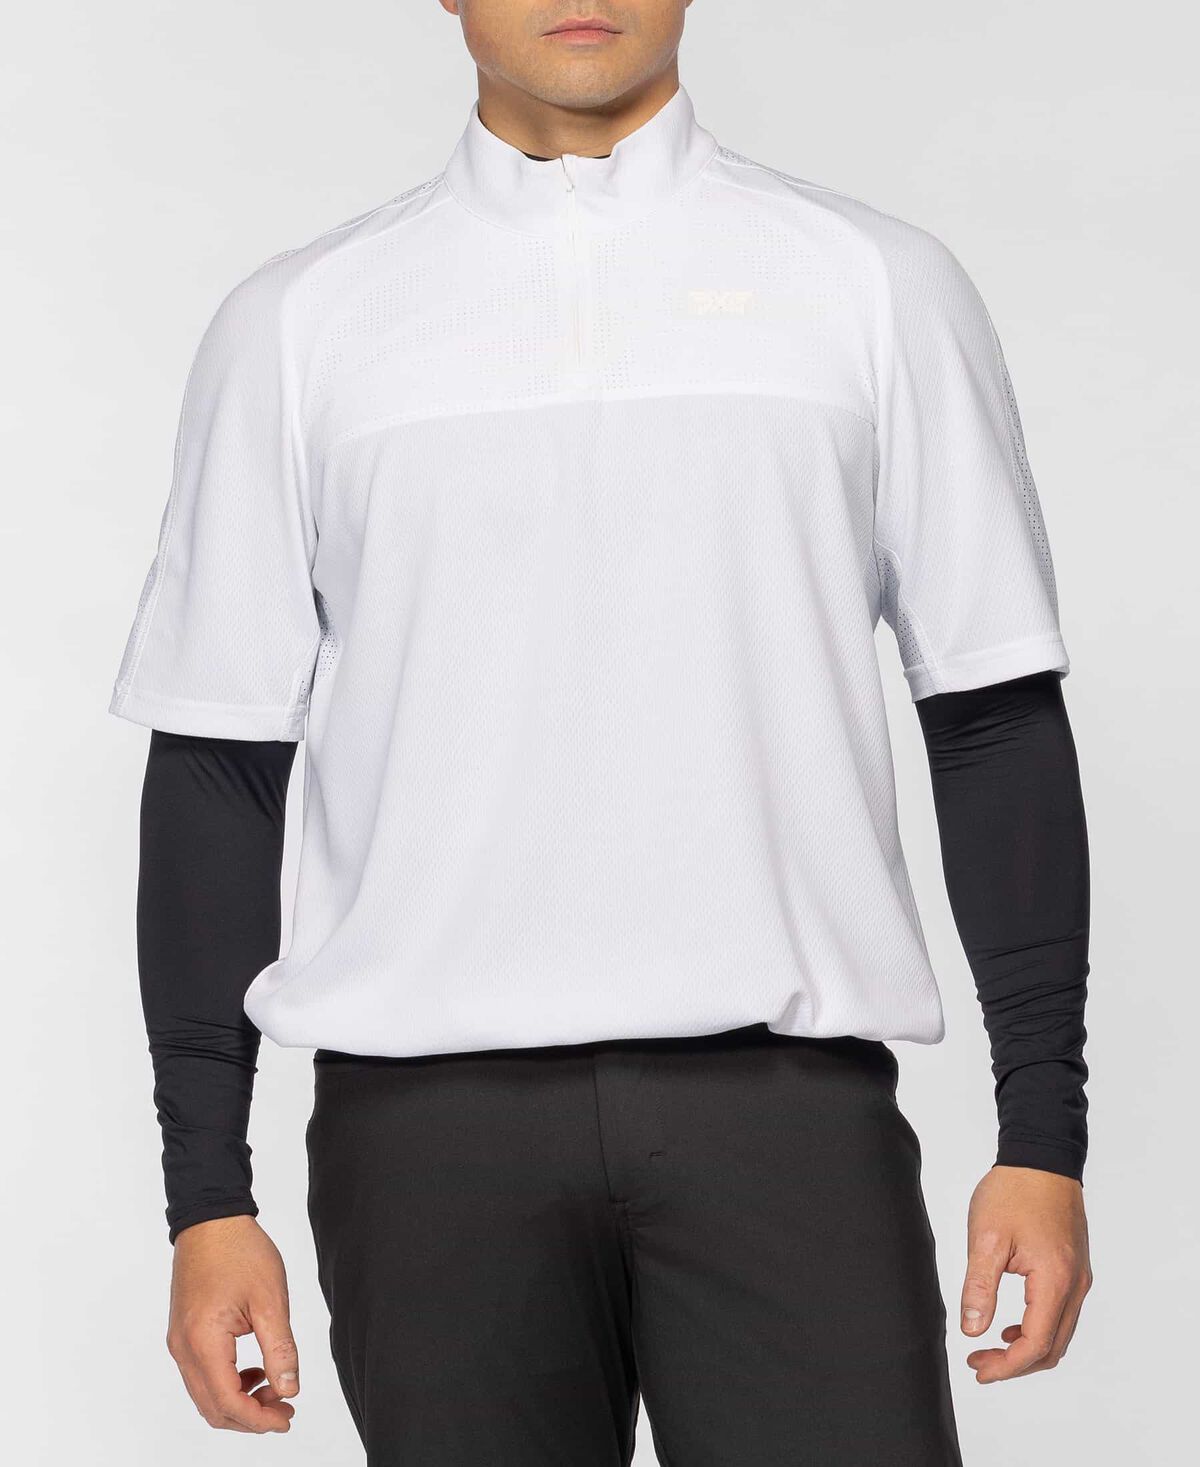 Men's 1/4 Zip Short Sleeve Anorak - White - Medium 